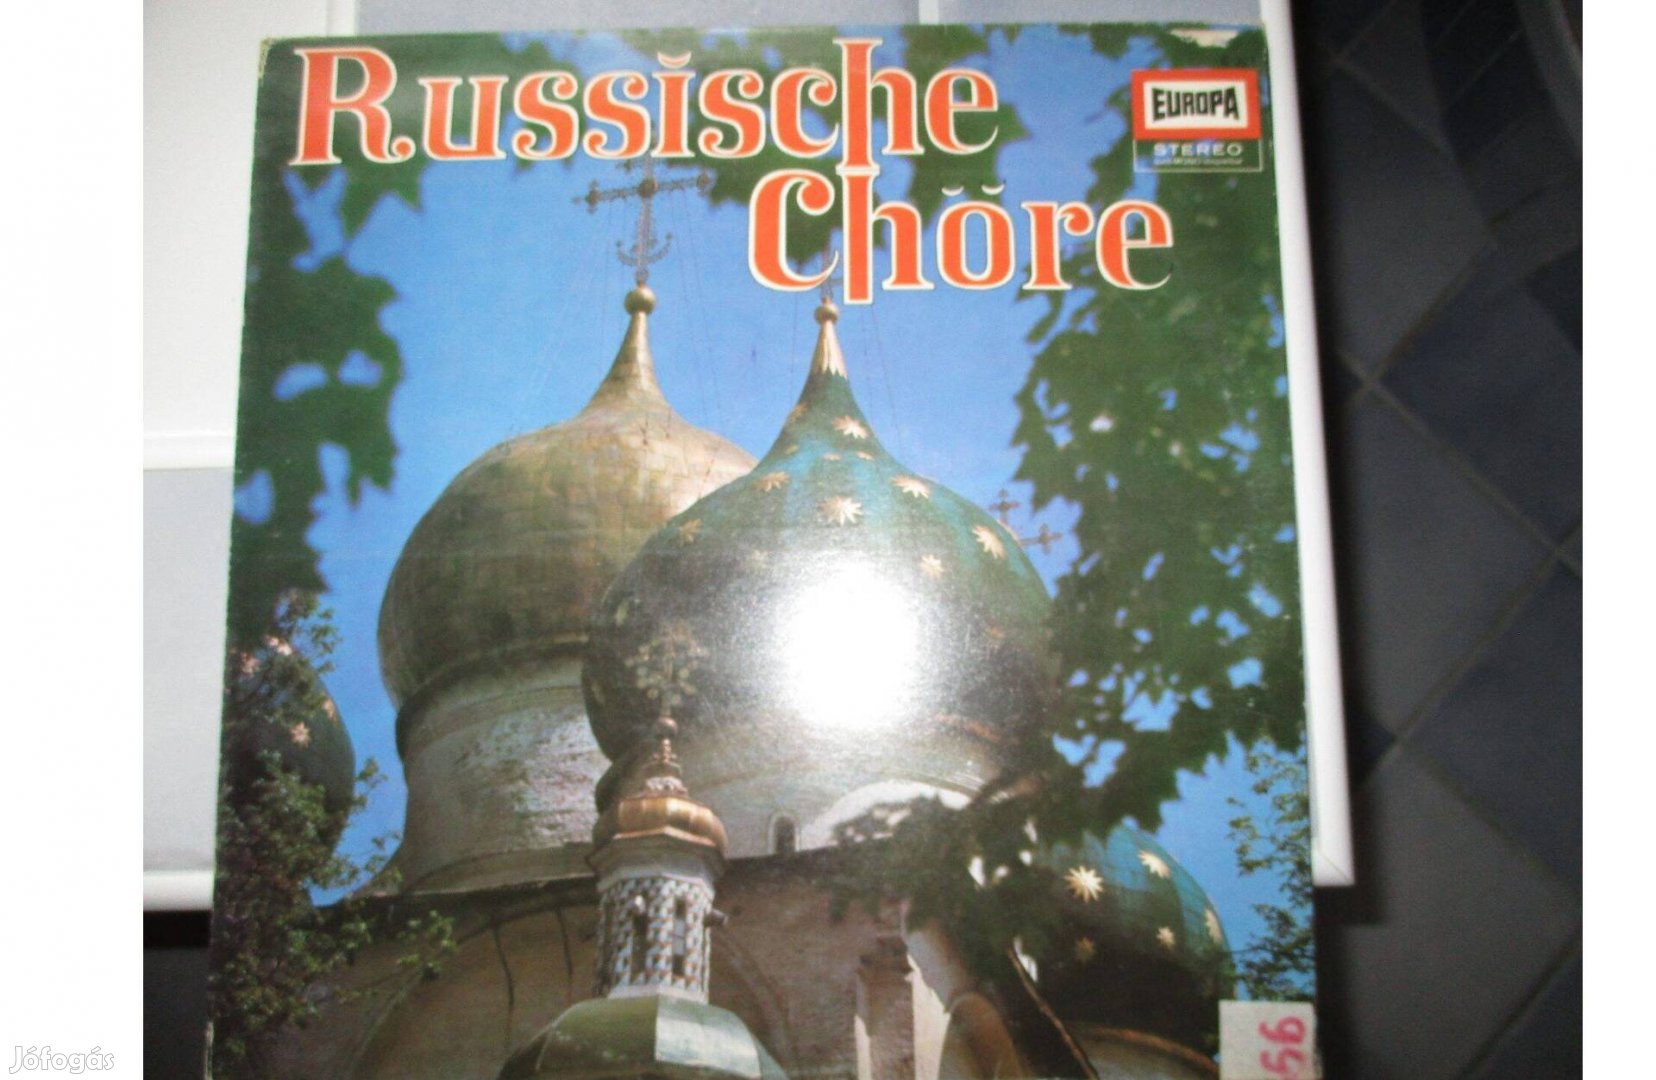 Orosz kórus bakelit hanglemez eladó